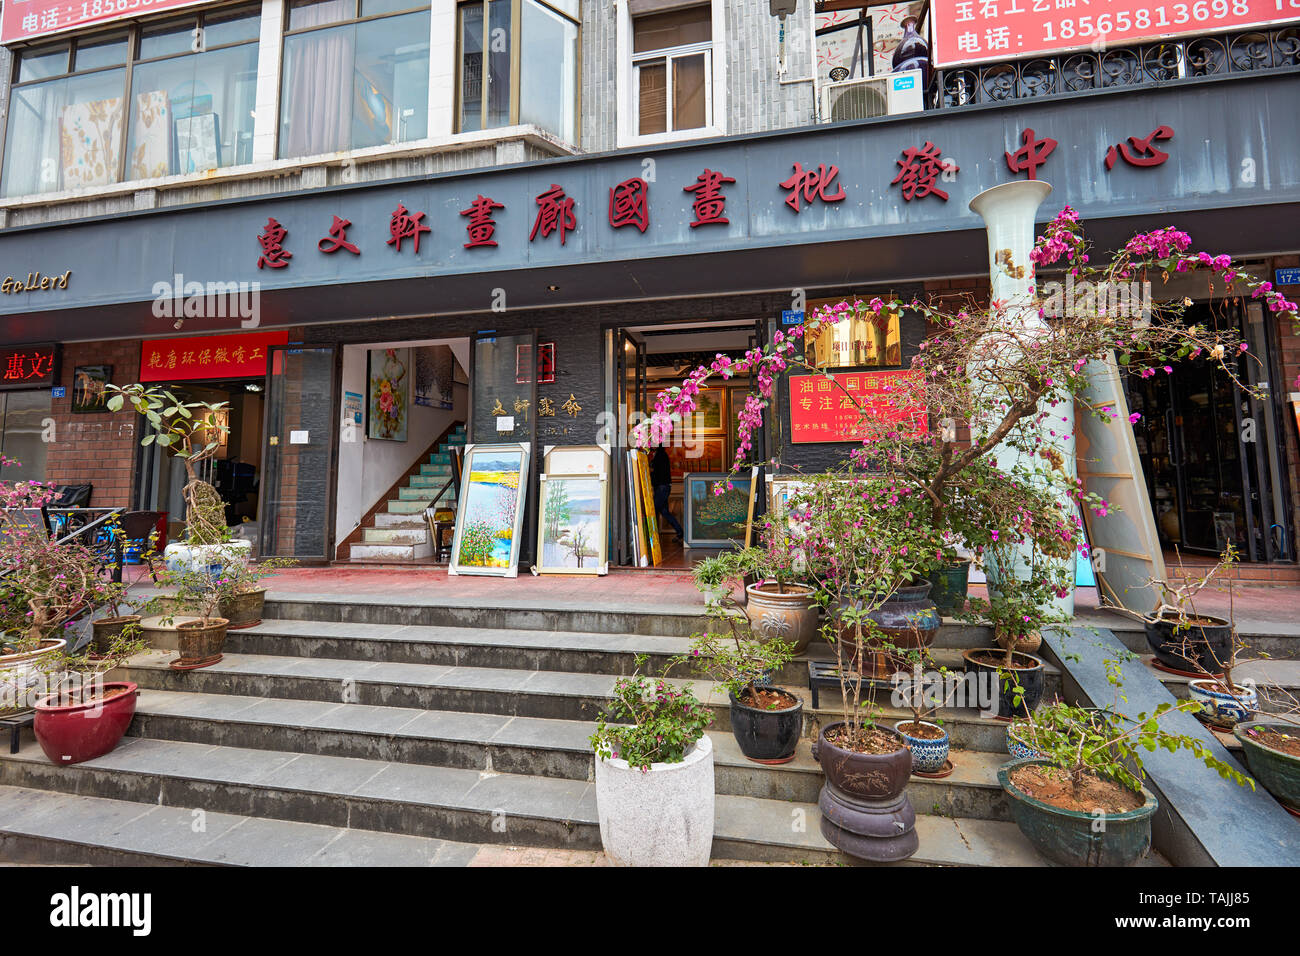 Galerie d'art local avec des fleurs en pot à l'entrée. Dafen, Shenzhen, province de Guangdong, en Chine. Banque D'Images